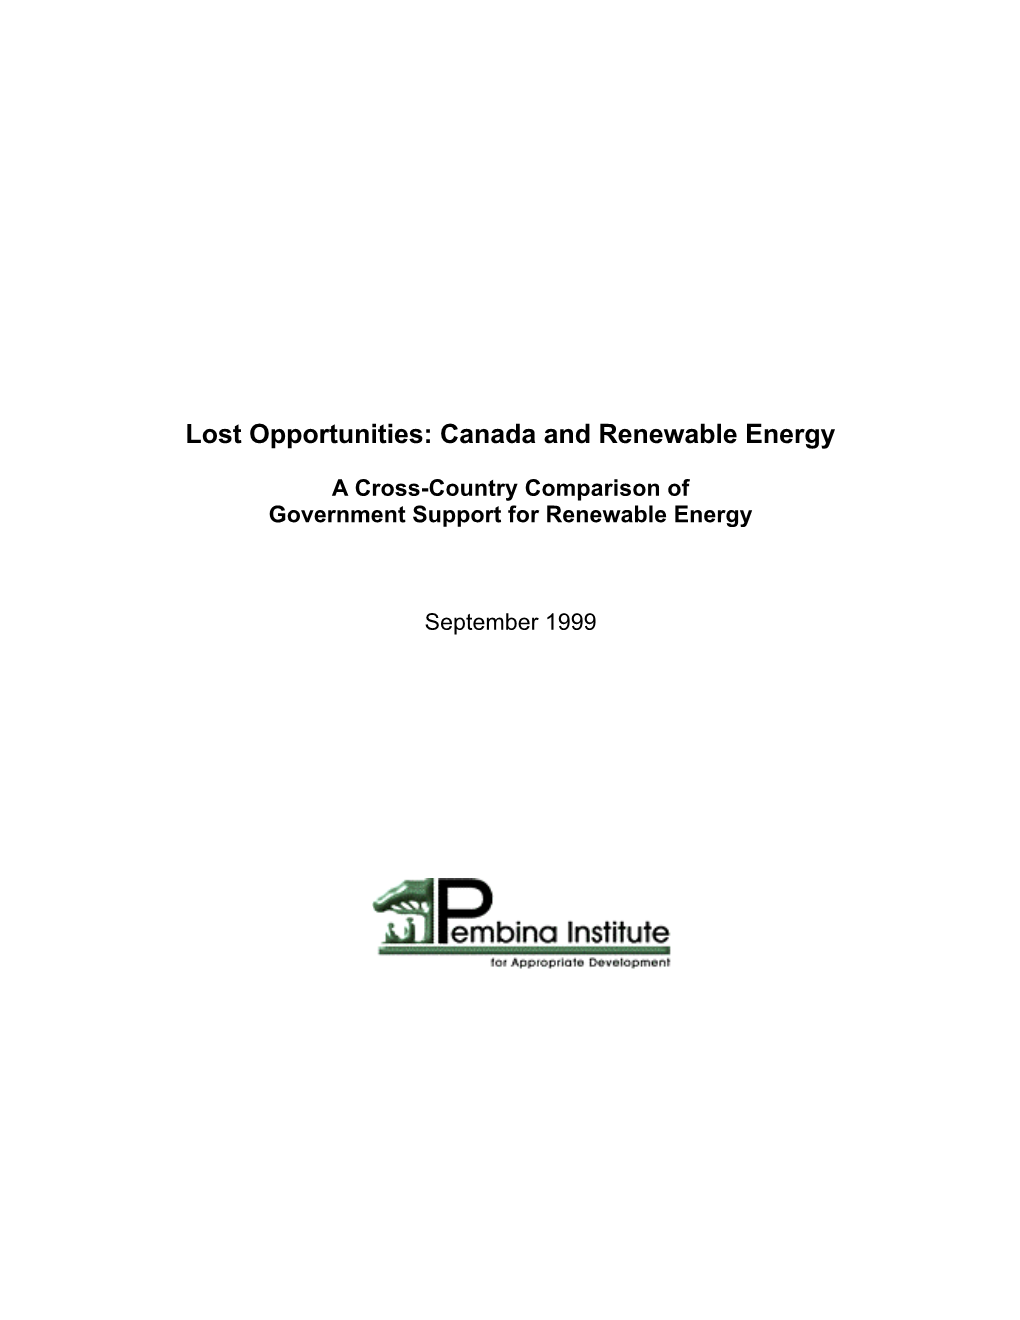 Canada and Renewable Energy